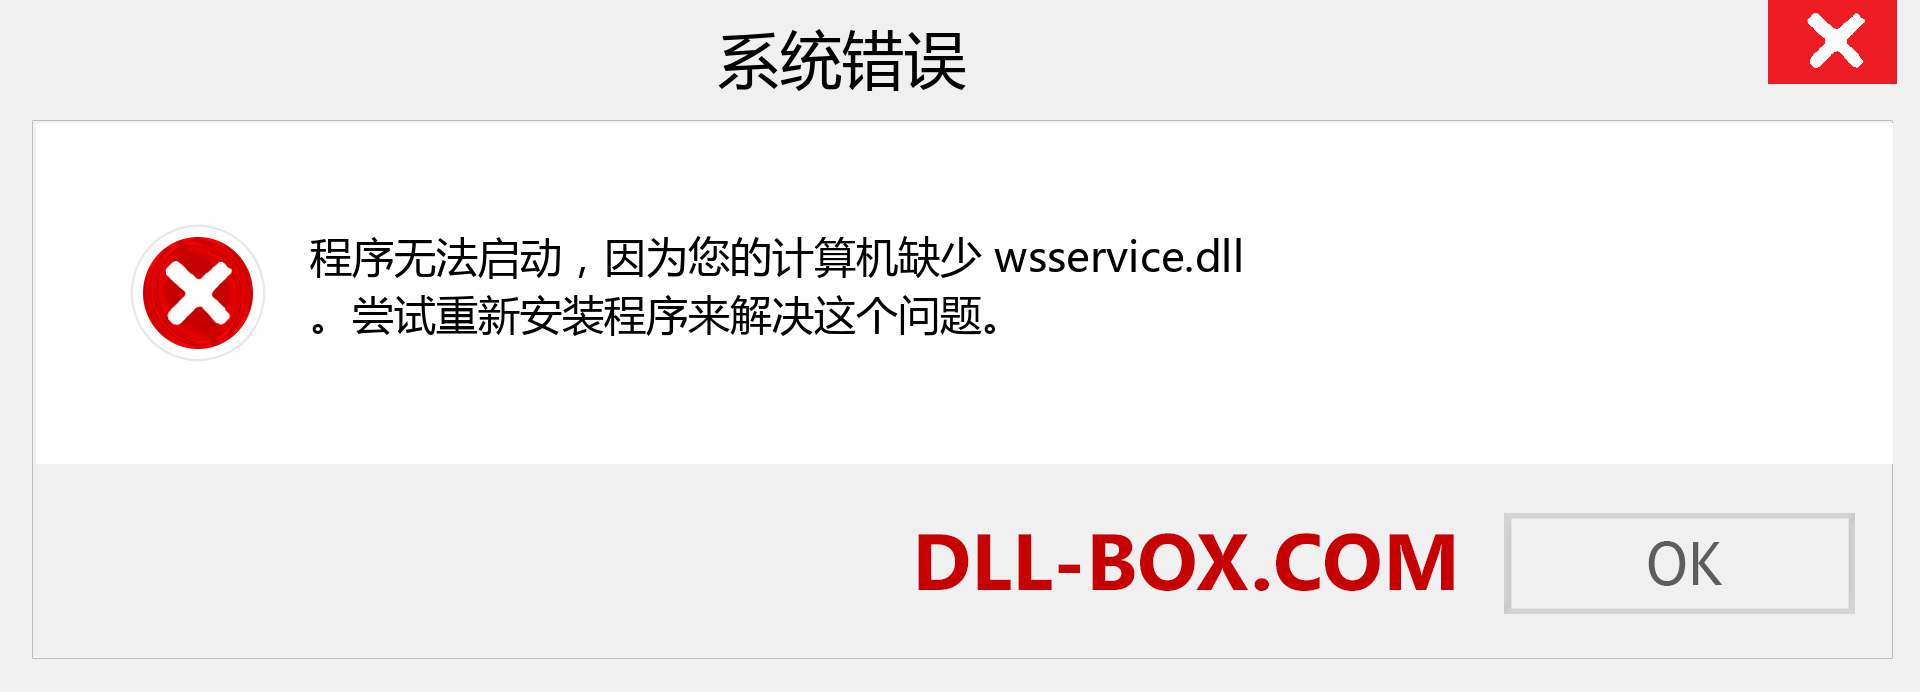 wsservice.dll 文件丢失？。 适用于 Windows 7、8、10 的下载 - 修复 Windows、照片、图像上的 wsservice dll 丢失错误